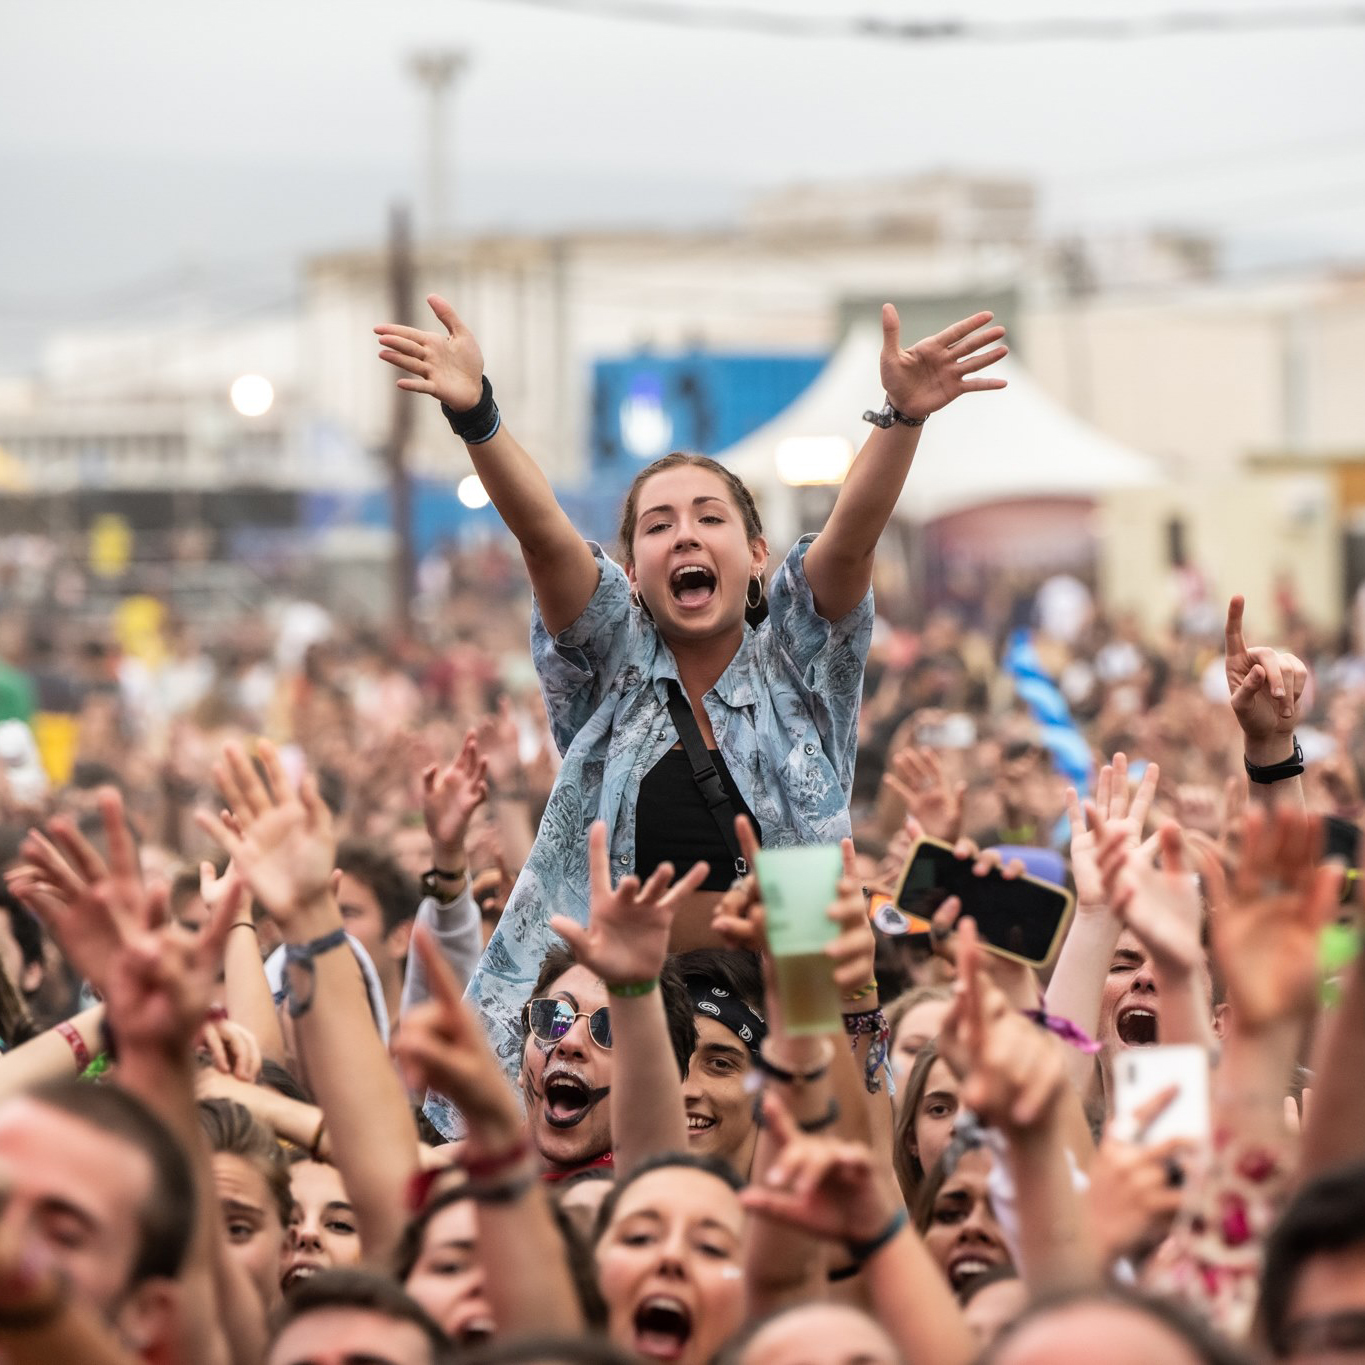 El Festival Cabo de Plata agota 12.000 abonos en cuarenta minutos